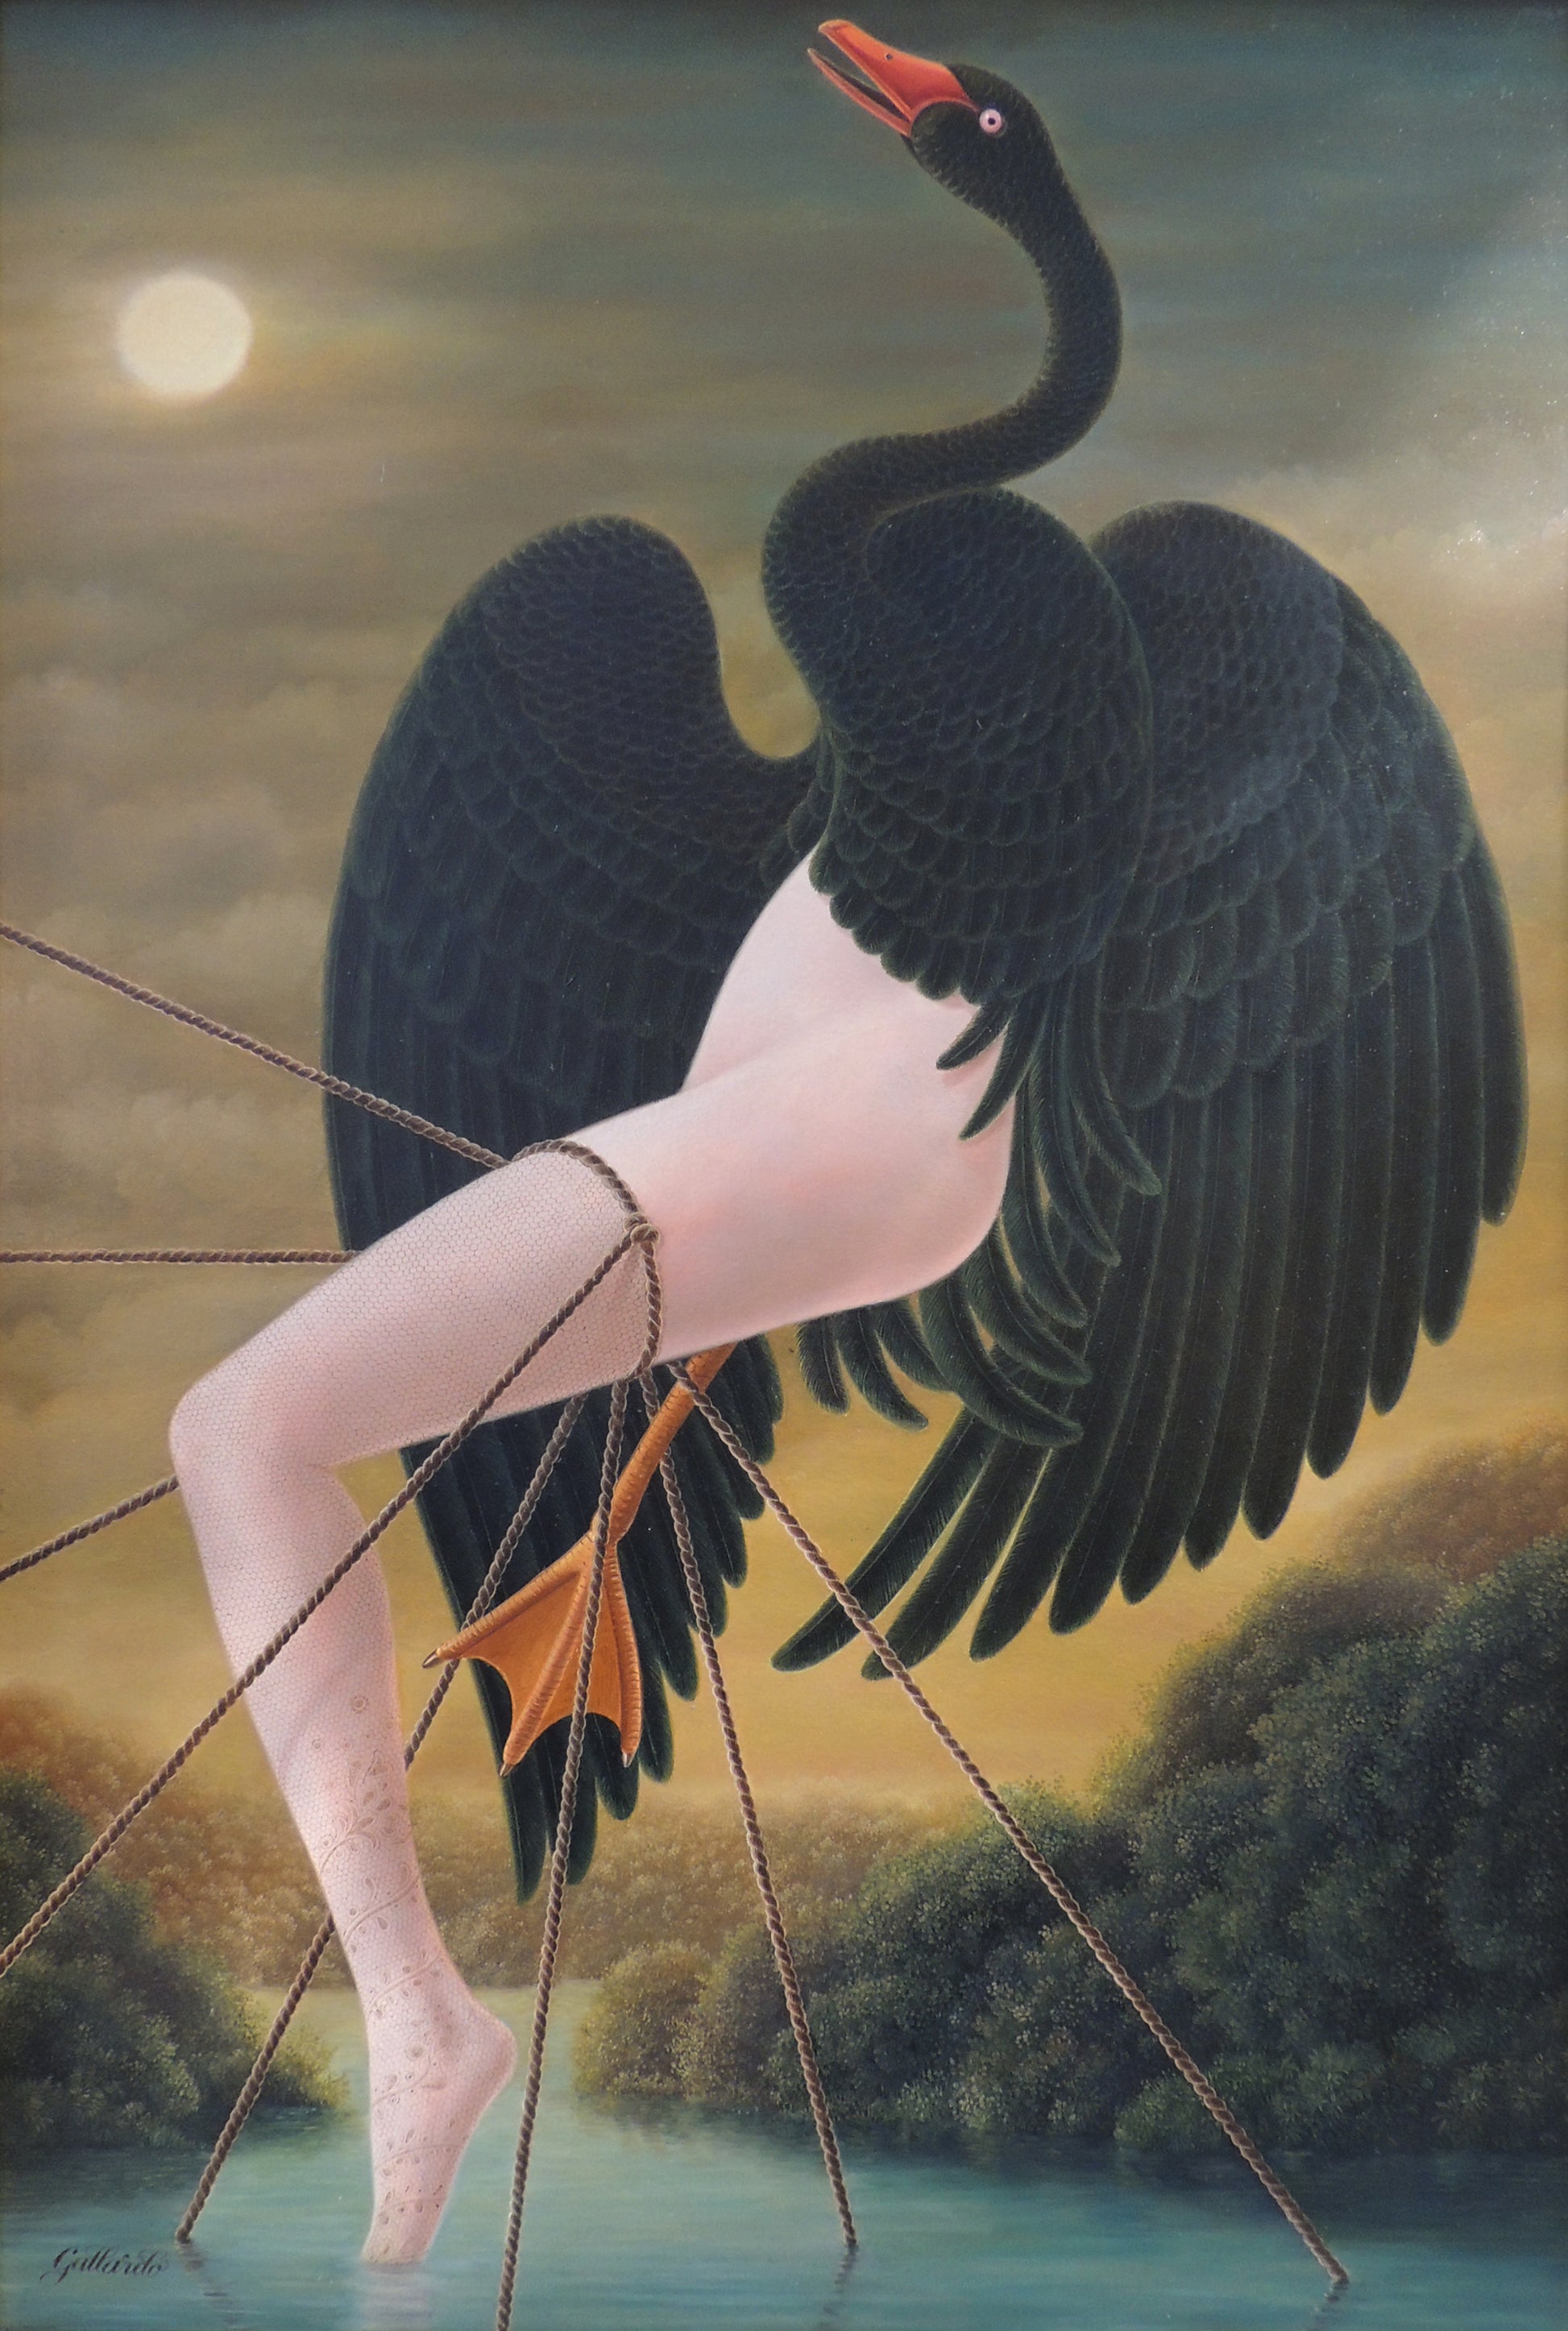 Gervasio Gallardo cuadro surrealista Leda y el Cisne Gaudifond